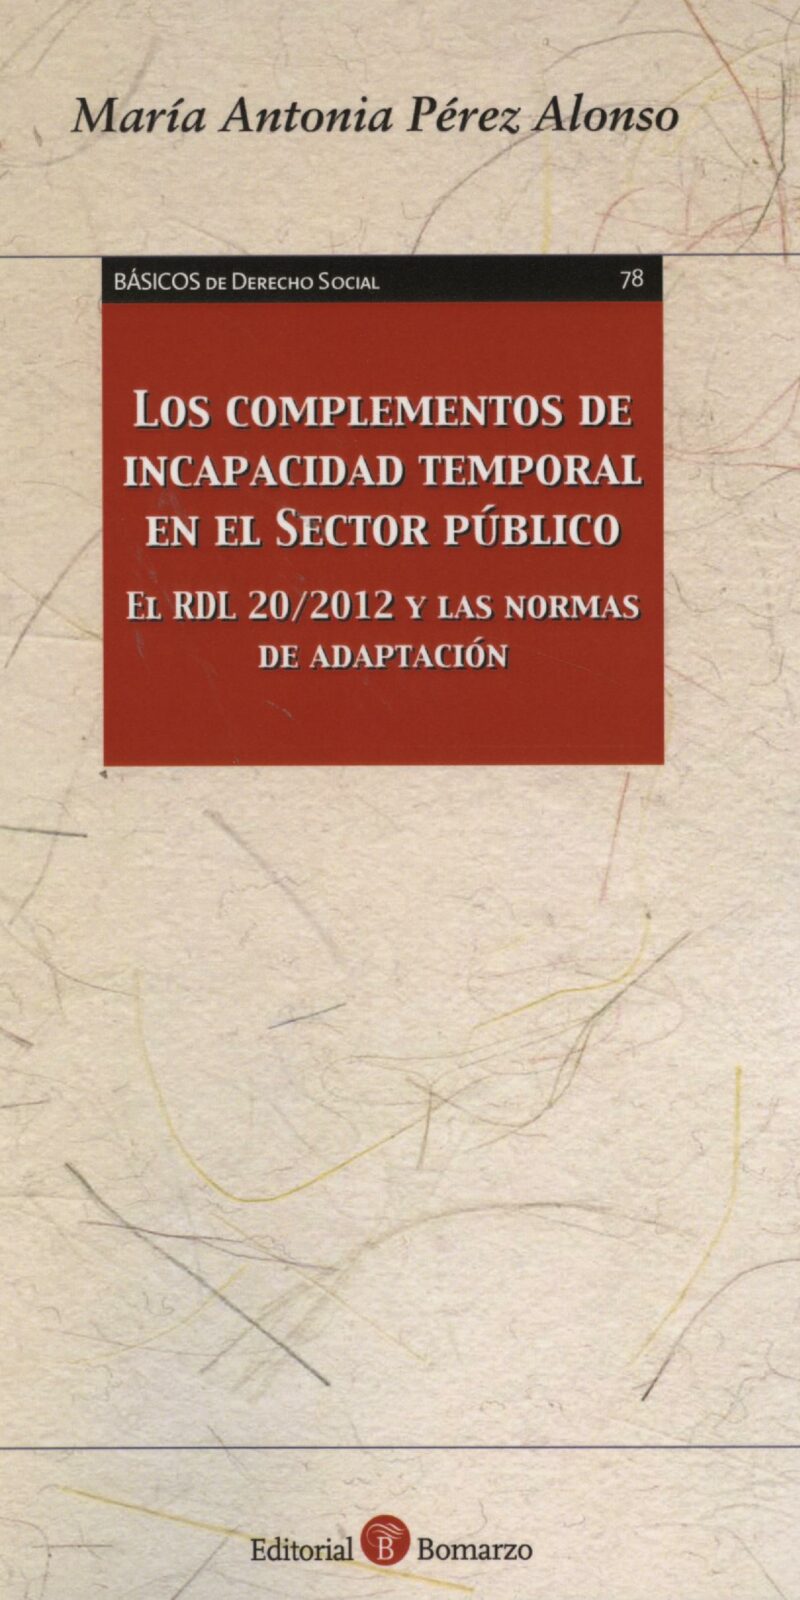 Complementos de Incapacidad Temporal en el Sector Público El RDL 20/2012 y las Normas de Adaptación